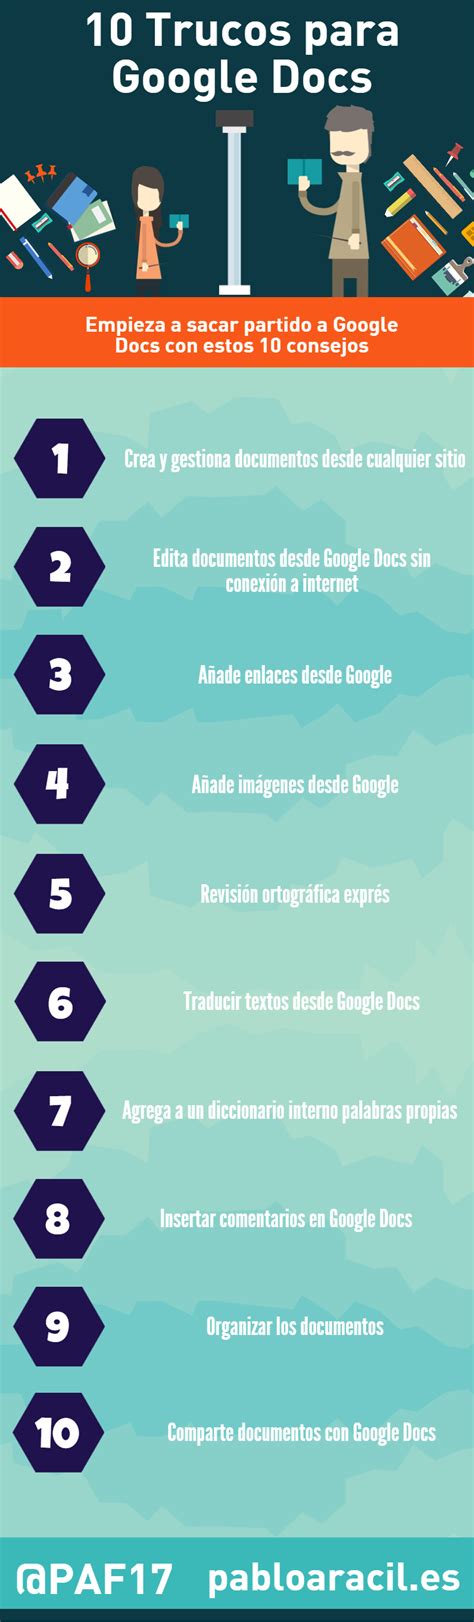 10 trucos de Google Docs